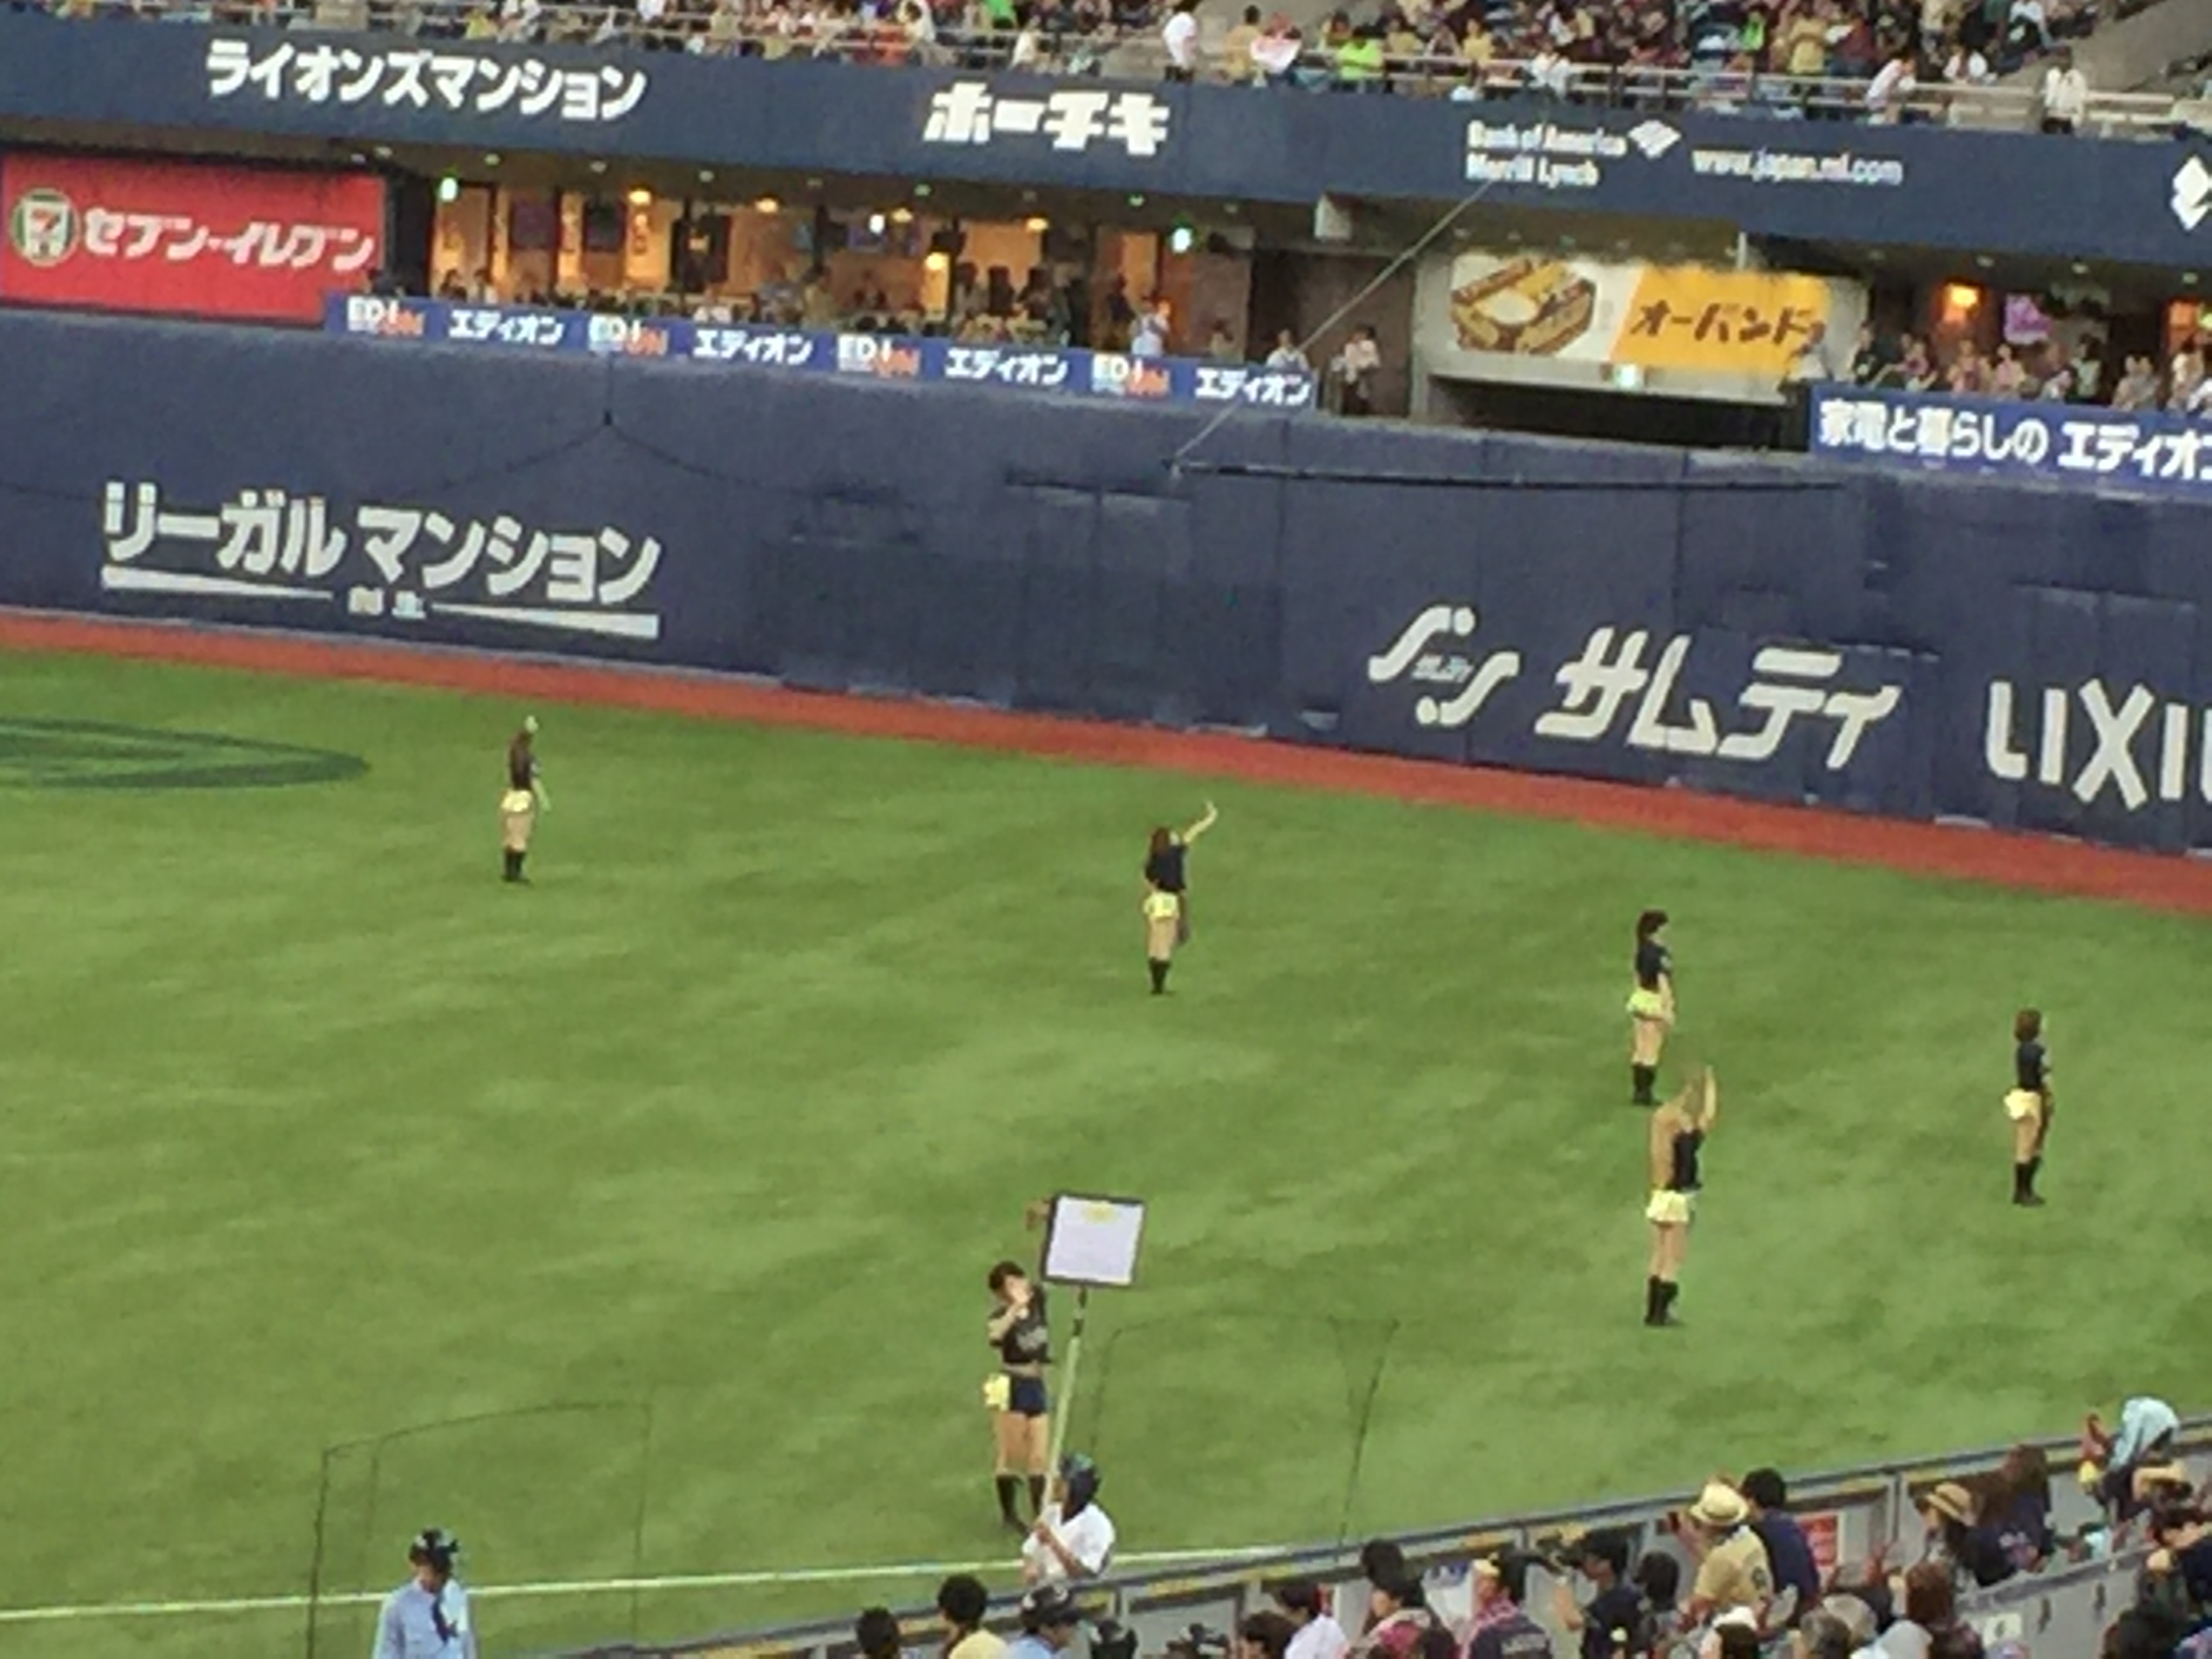 2015年6月21日 オリックス 対 埼玉西武 Bs選手会プロデュースデー